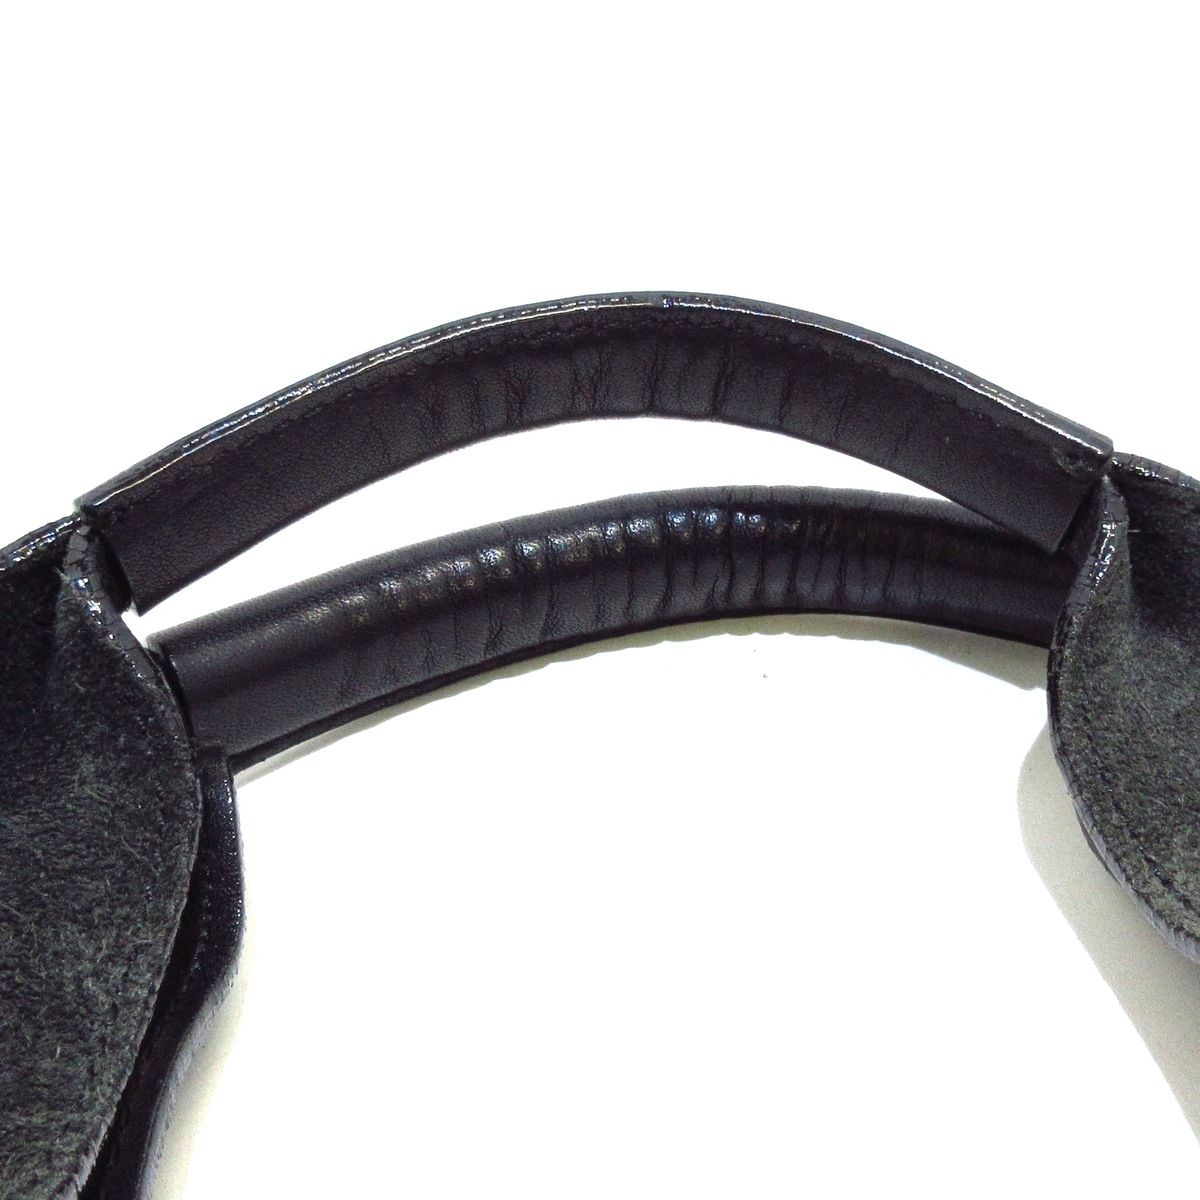 EPOCA(エポカ) ハンドバッグ - 黒×グレー 型押し レザー×スエード